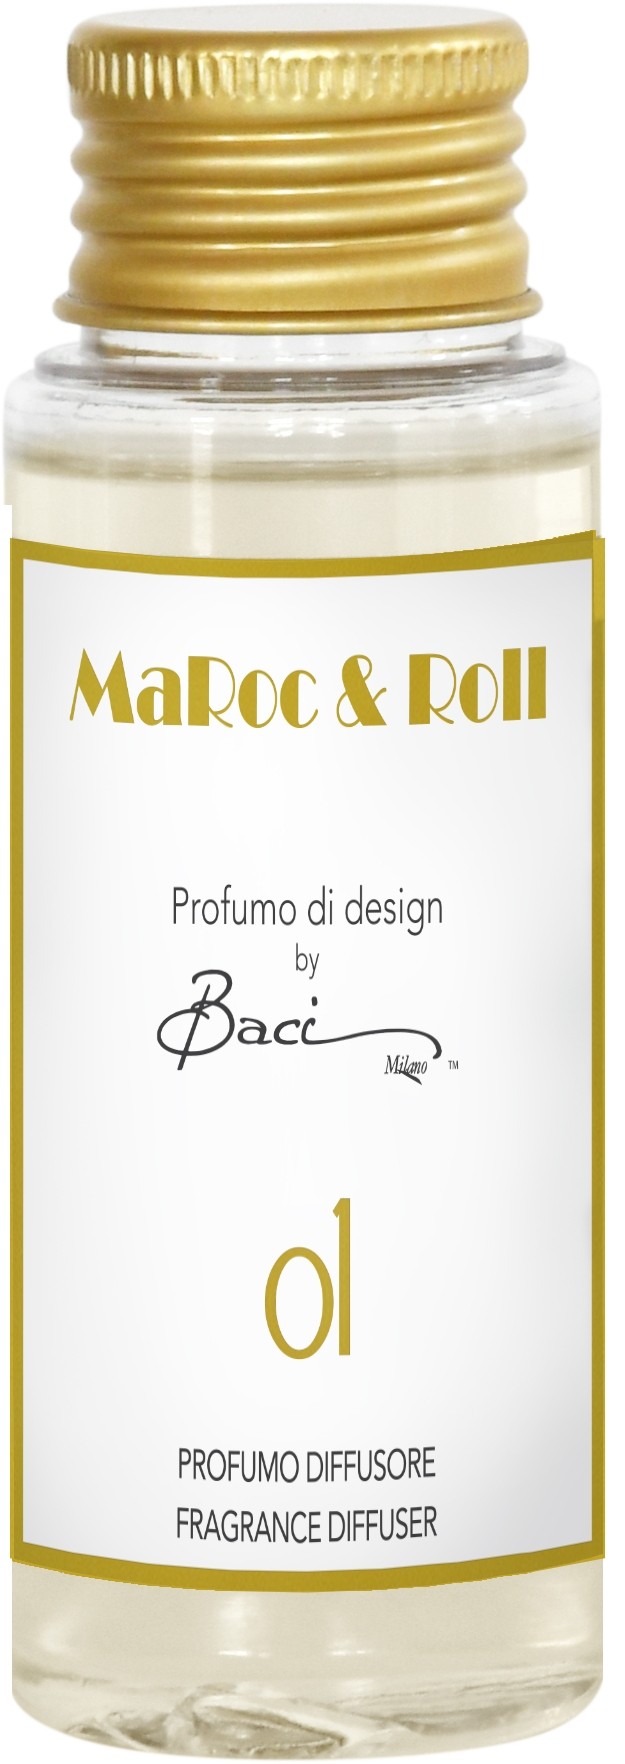 Fragranza Diffusore 50 ml MaRoc & Roll 01 REF50.01